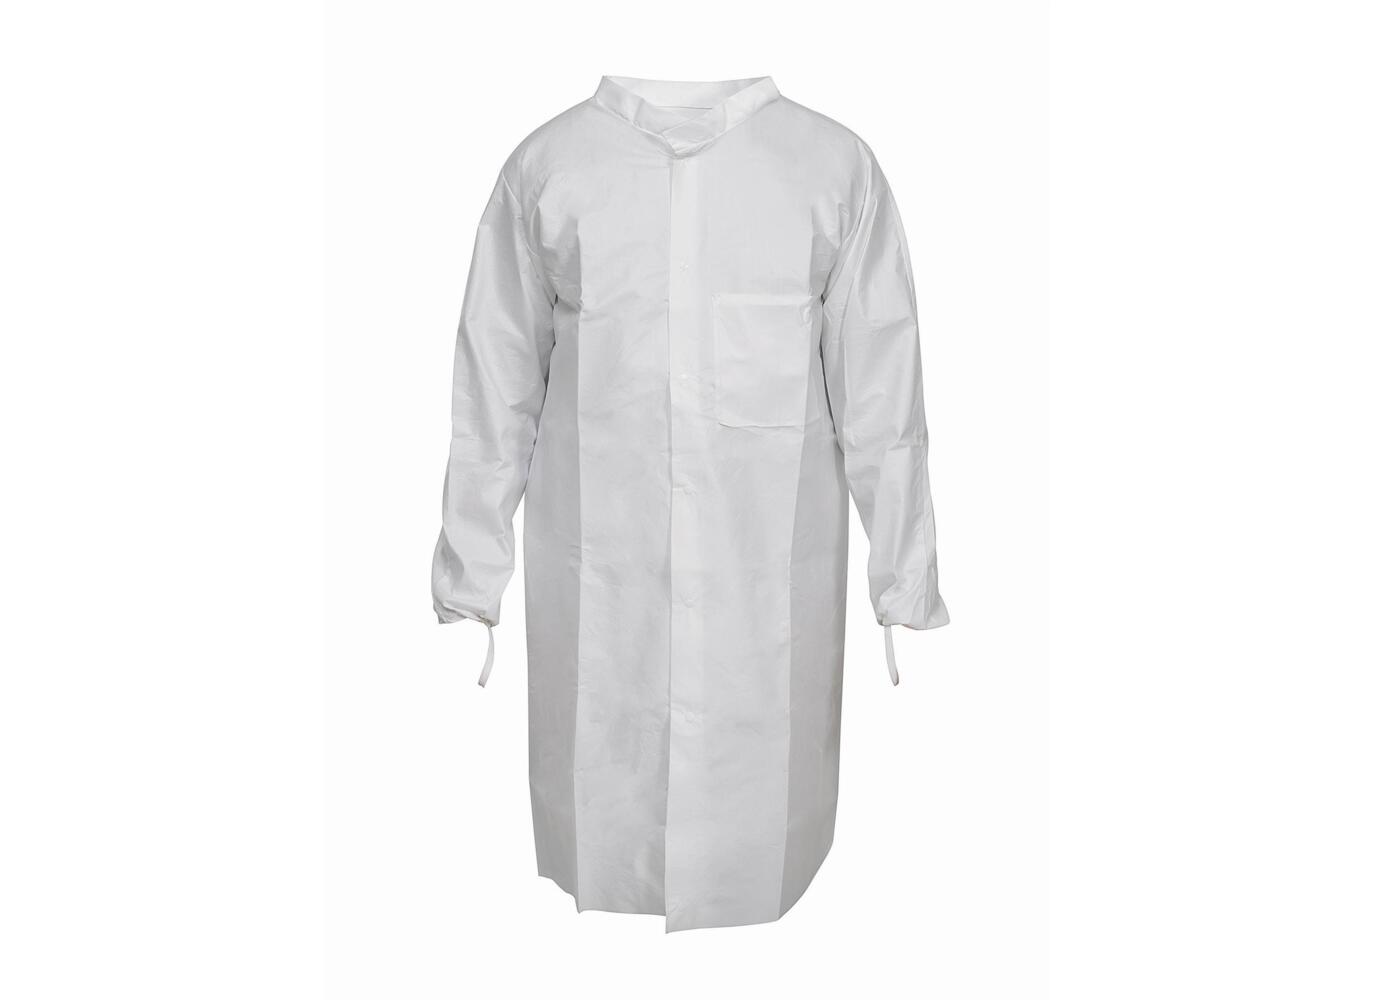 Kimtech™ A7 P+, Laboratory Coat 97740 - White, 2XL, 1x15 (15 total) - 97740